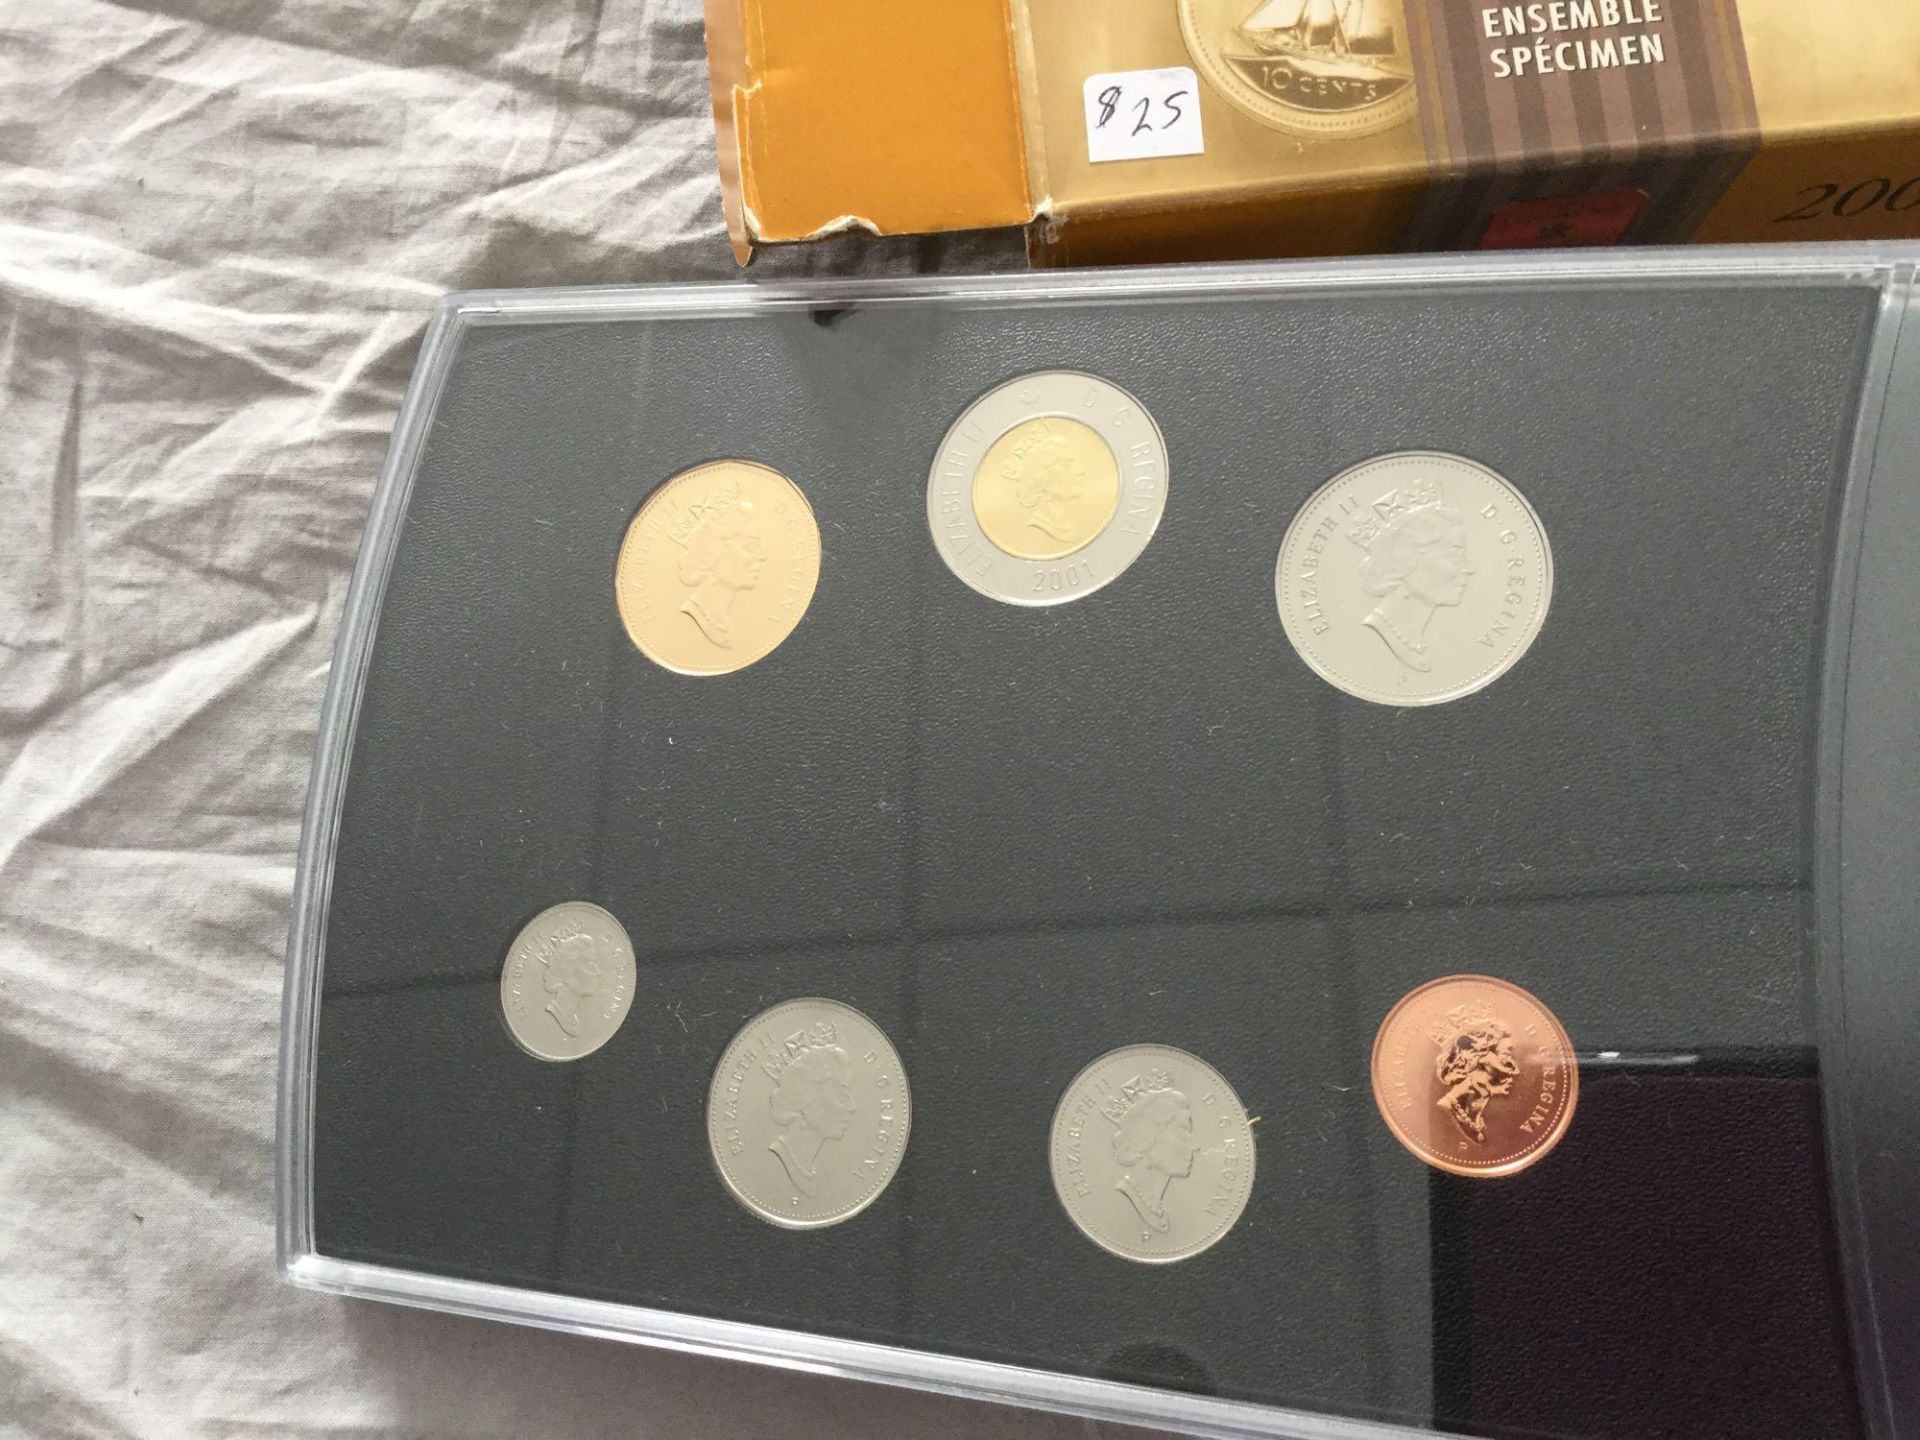 2001 Royal Canadian Mint Specimen Set - Image 4 of 4